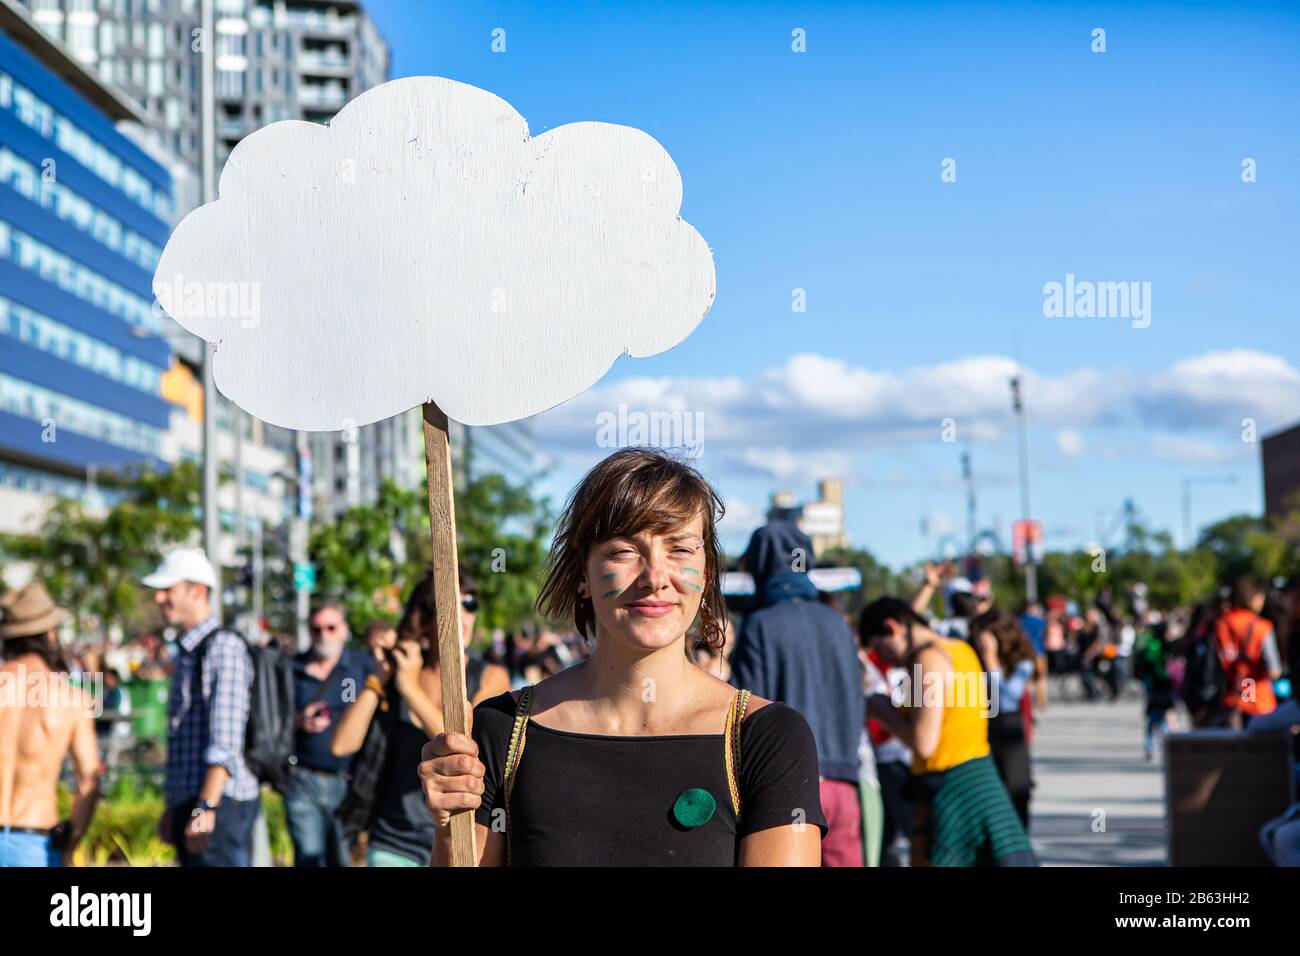 Ein Nahschuss von einer jungen Frau, die bei einer Kundgebung zum Klimawandel ein wolkenförmiges leeres Protestschild hält, Platz für Kopien gegen einen blauen Himmel Stockfoto